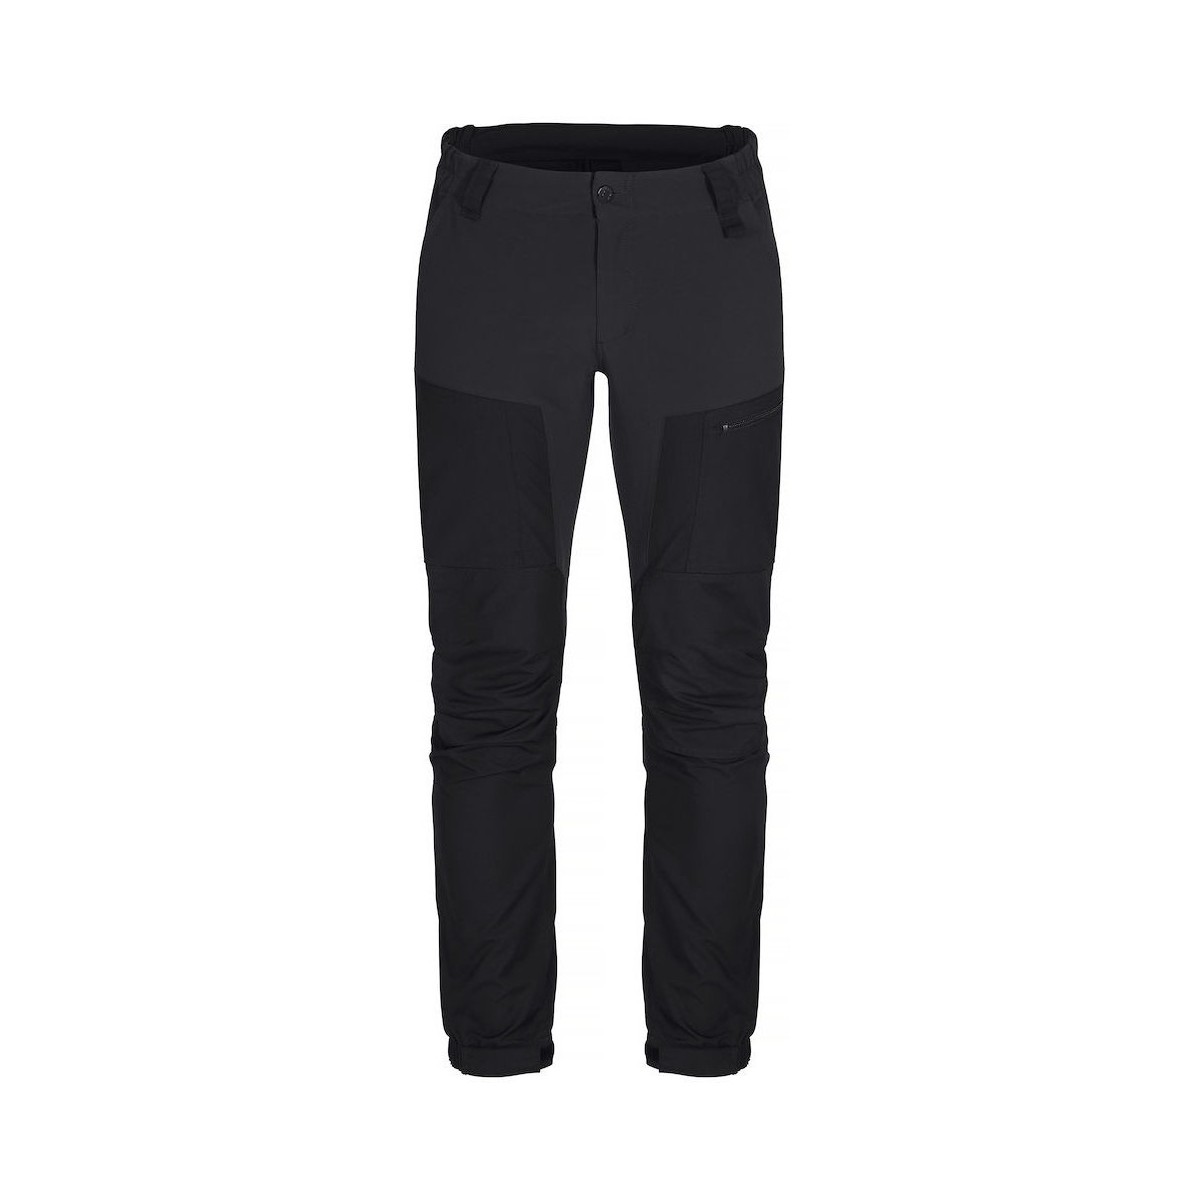 textil Hombre Pantalones C-Clique Kenai Negro